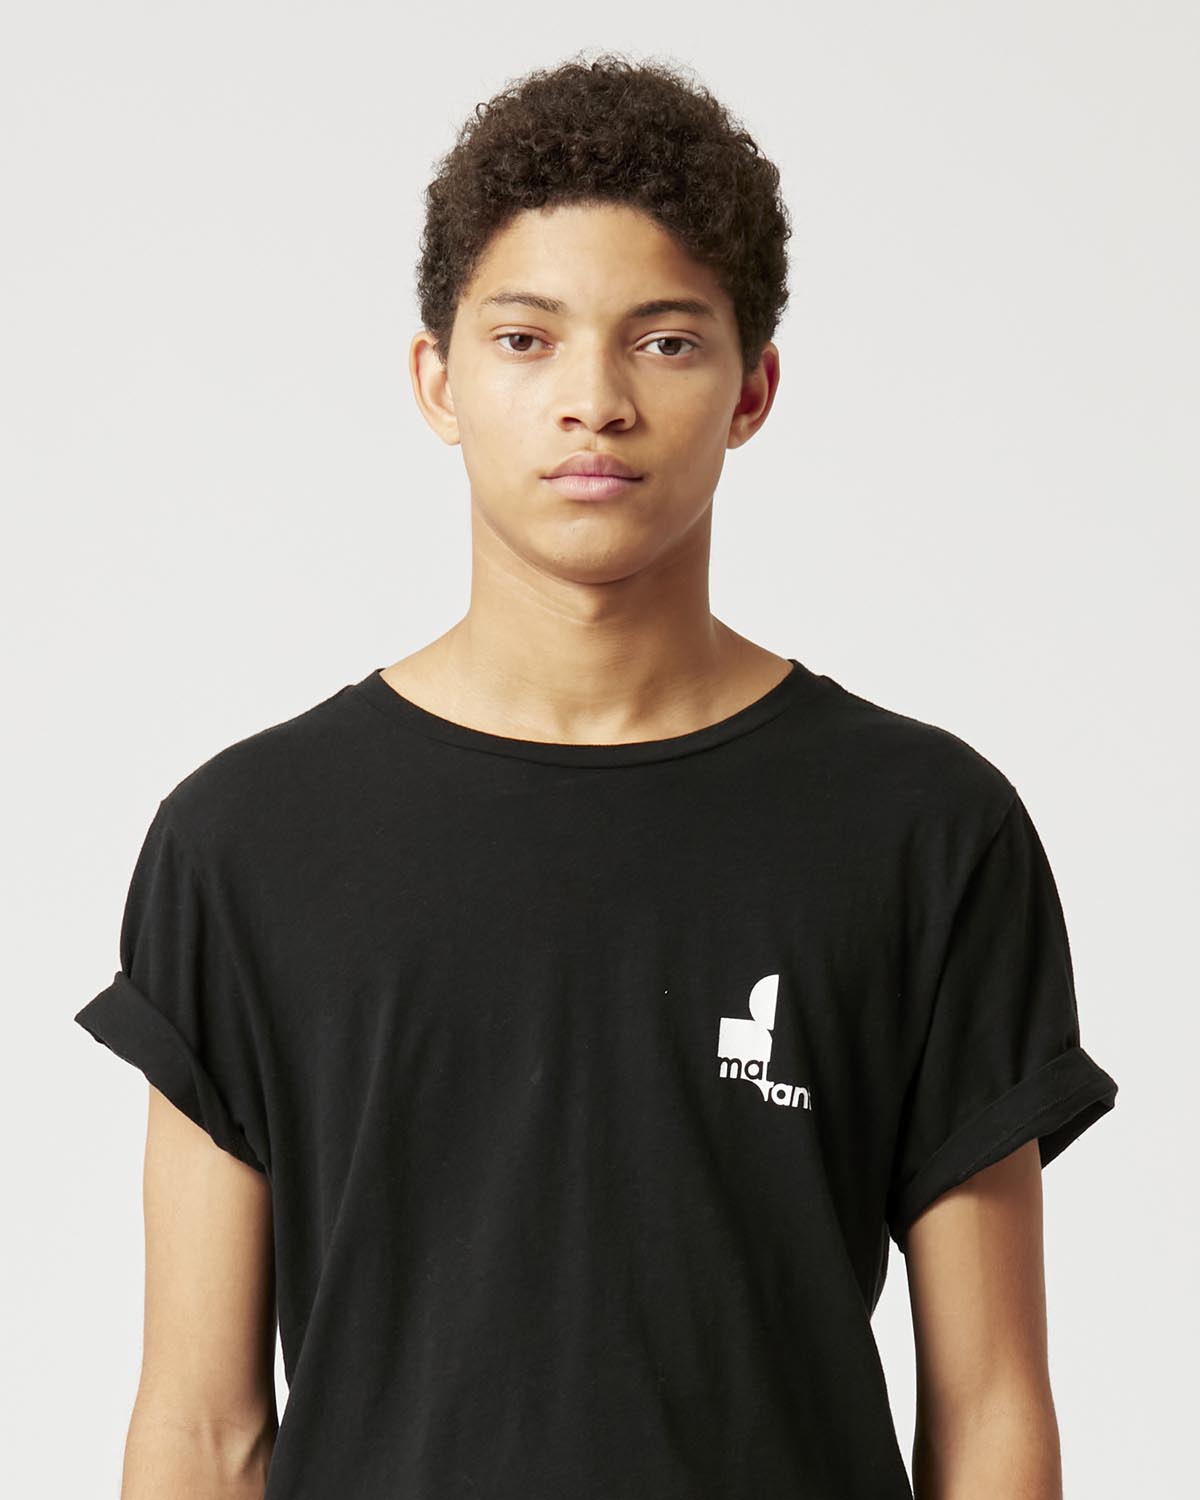 T-shirt zafferh aus baumwolle mit logo Man Schwarz 3